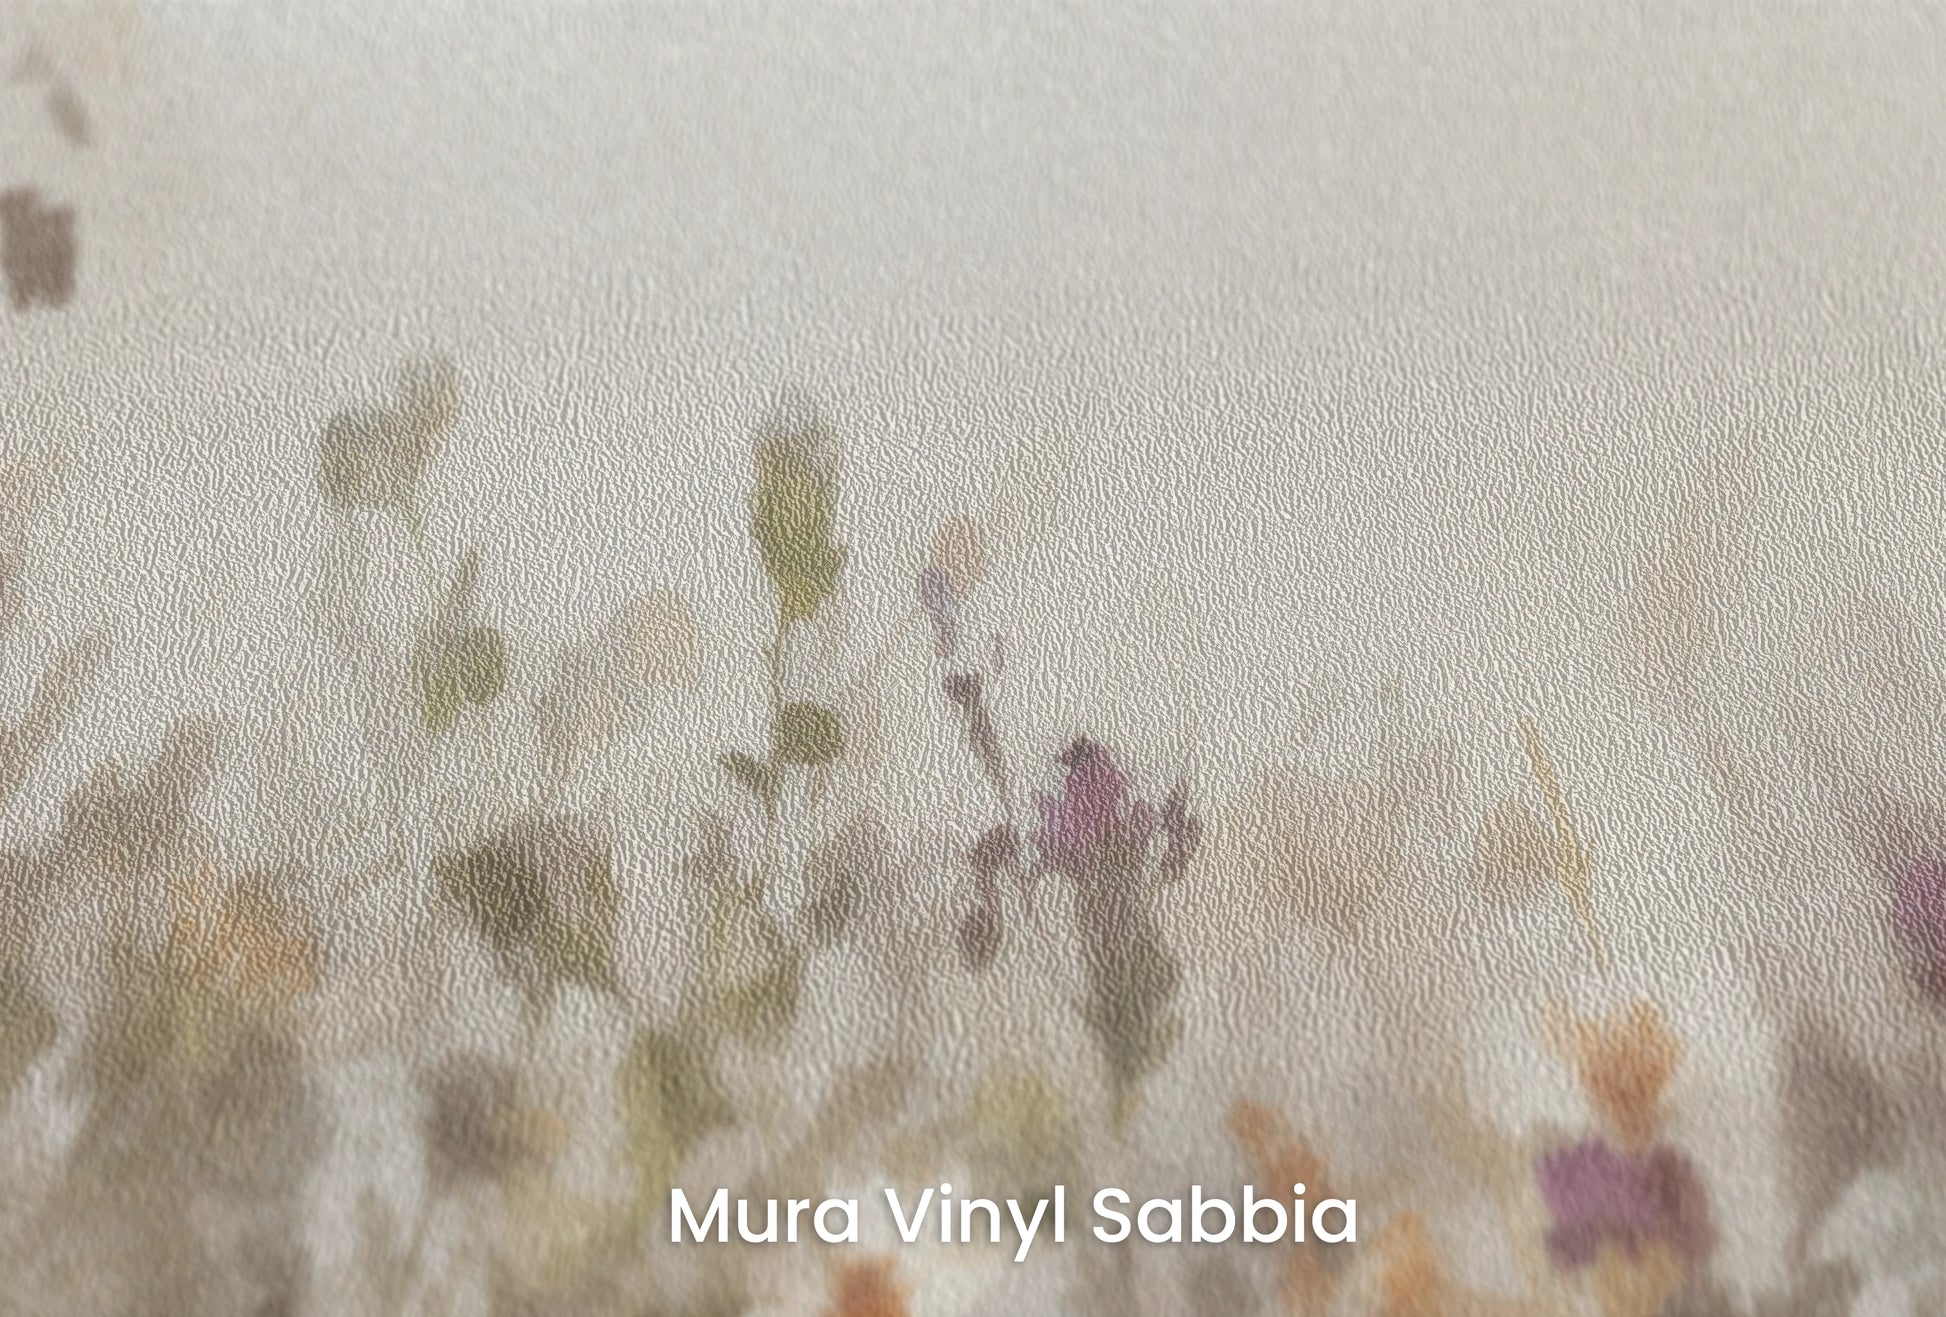 Zbliżenie na artystyczną fototapetę o nazwie HarmonyBouquet na podłożu Mura Vinyl Sabbia struktura grubego ziarna piasku.